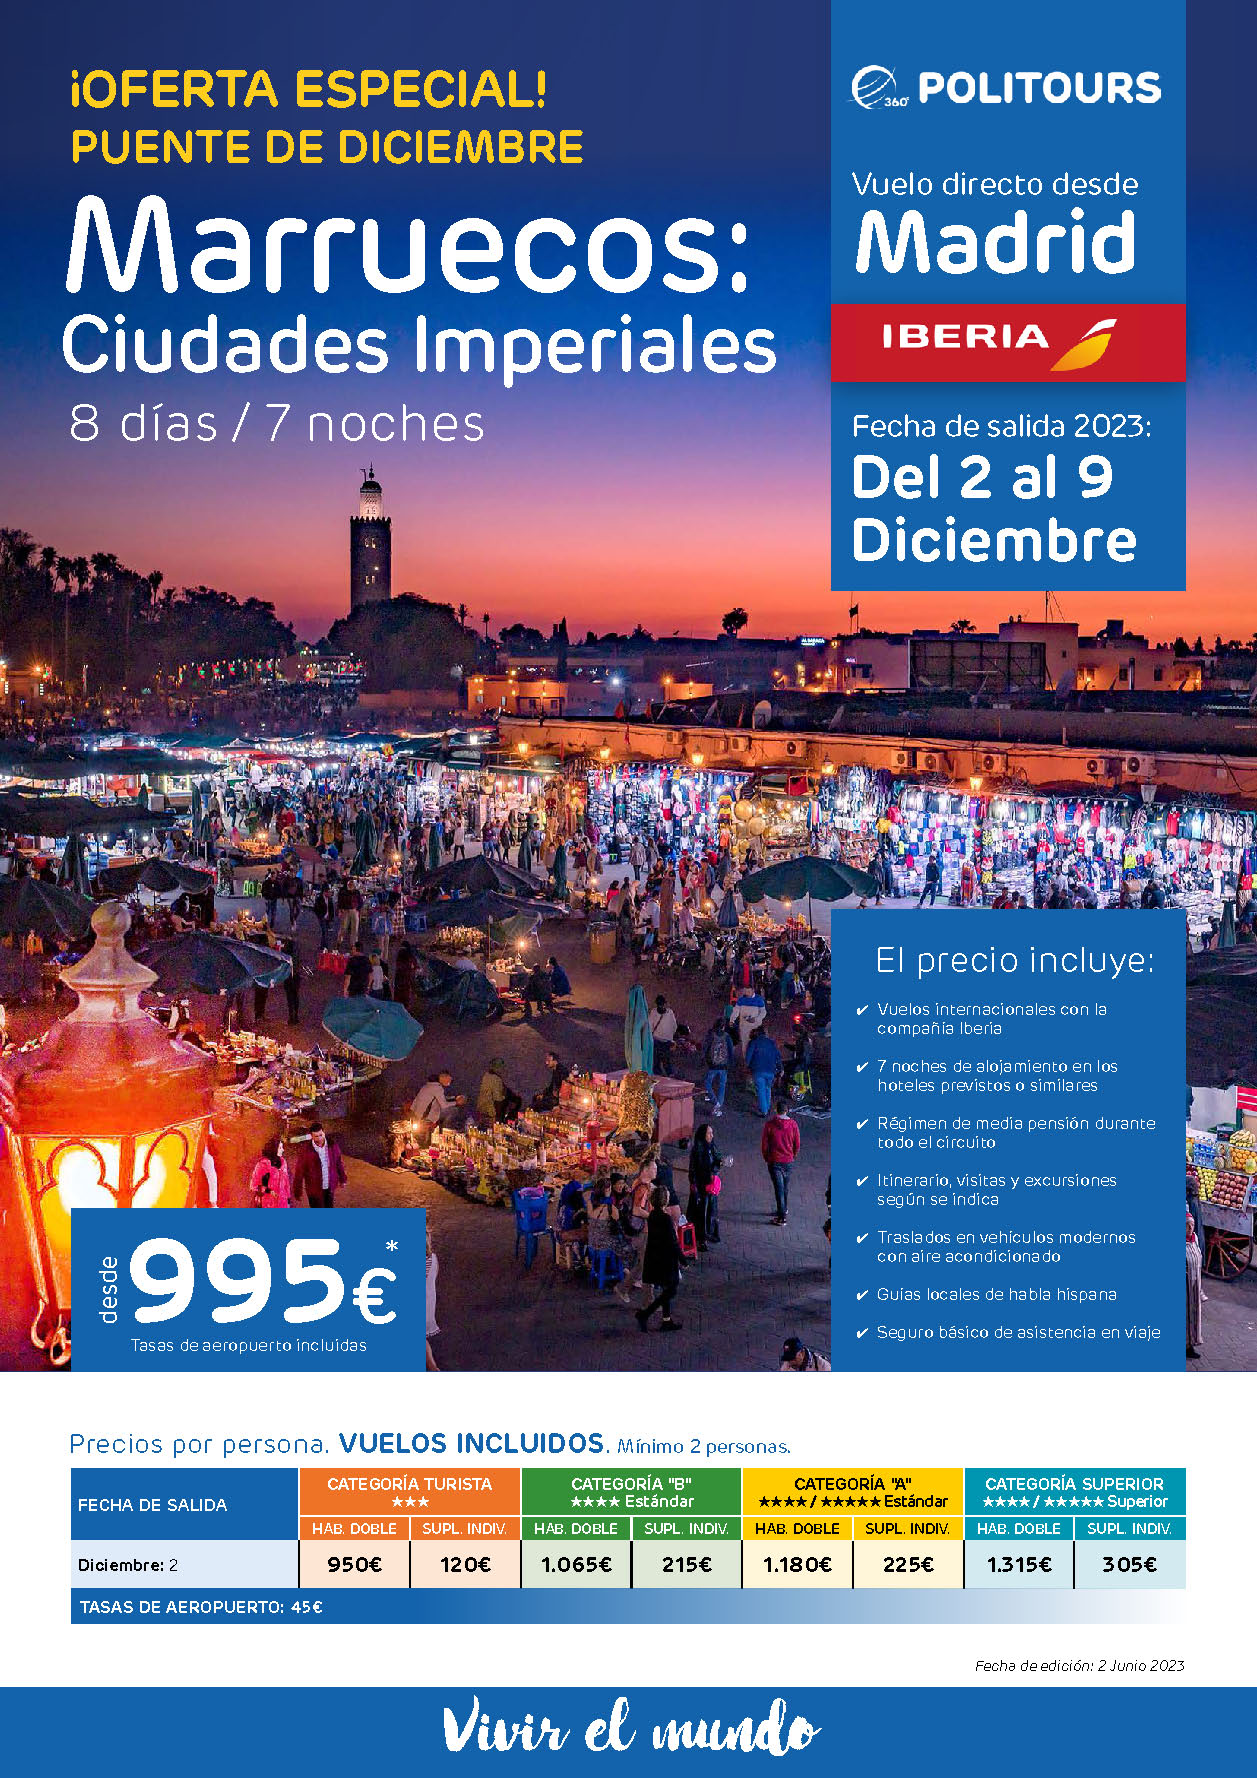 Oferta Politours Puente de Diciembre 2023 Circuito Marruecos Ciudades Imperiales 8 dias salida 2 diciembre en vuelo directo desde Madrid